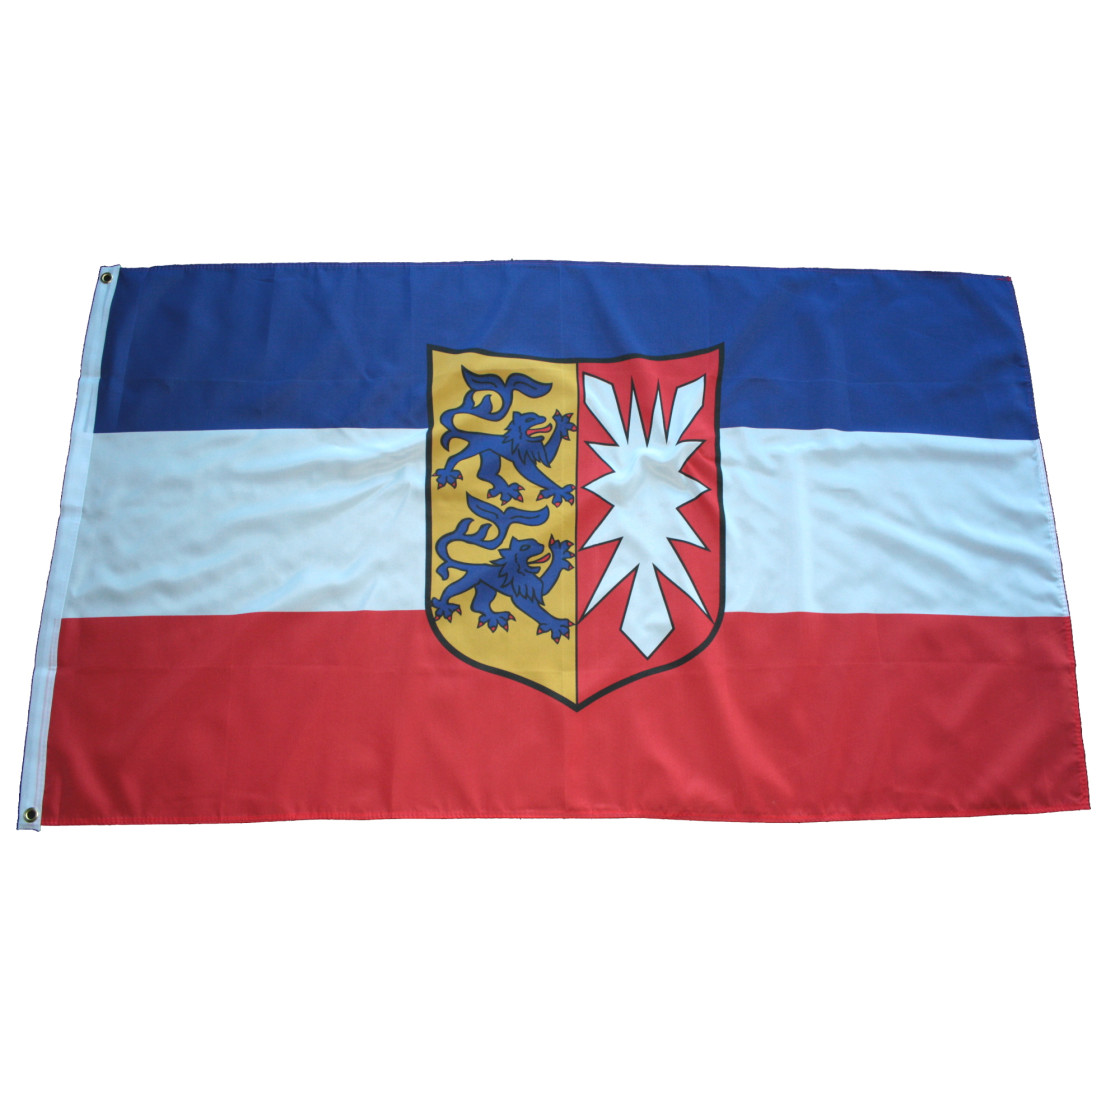 Grösse 150 x 90 cm Flagge Bundeslandfahne Schleswig-Holstein 